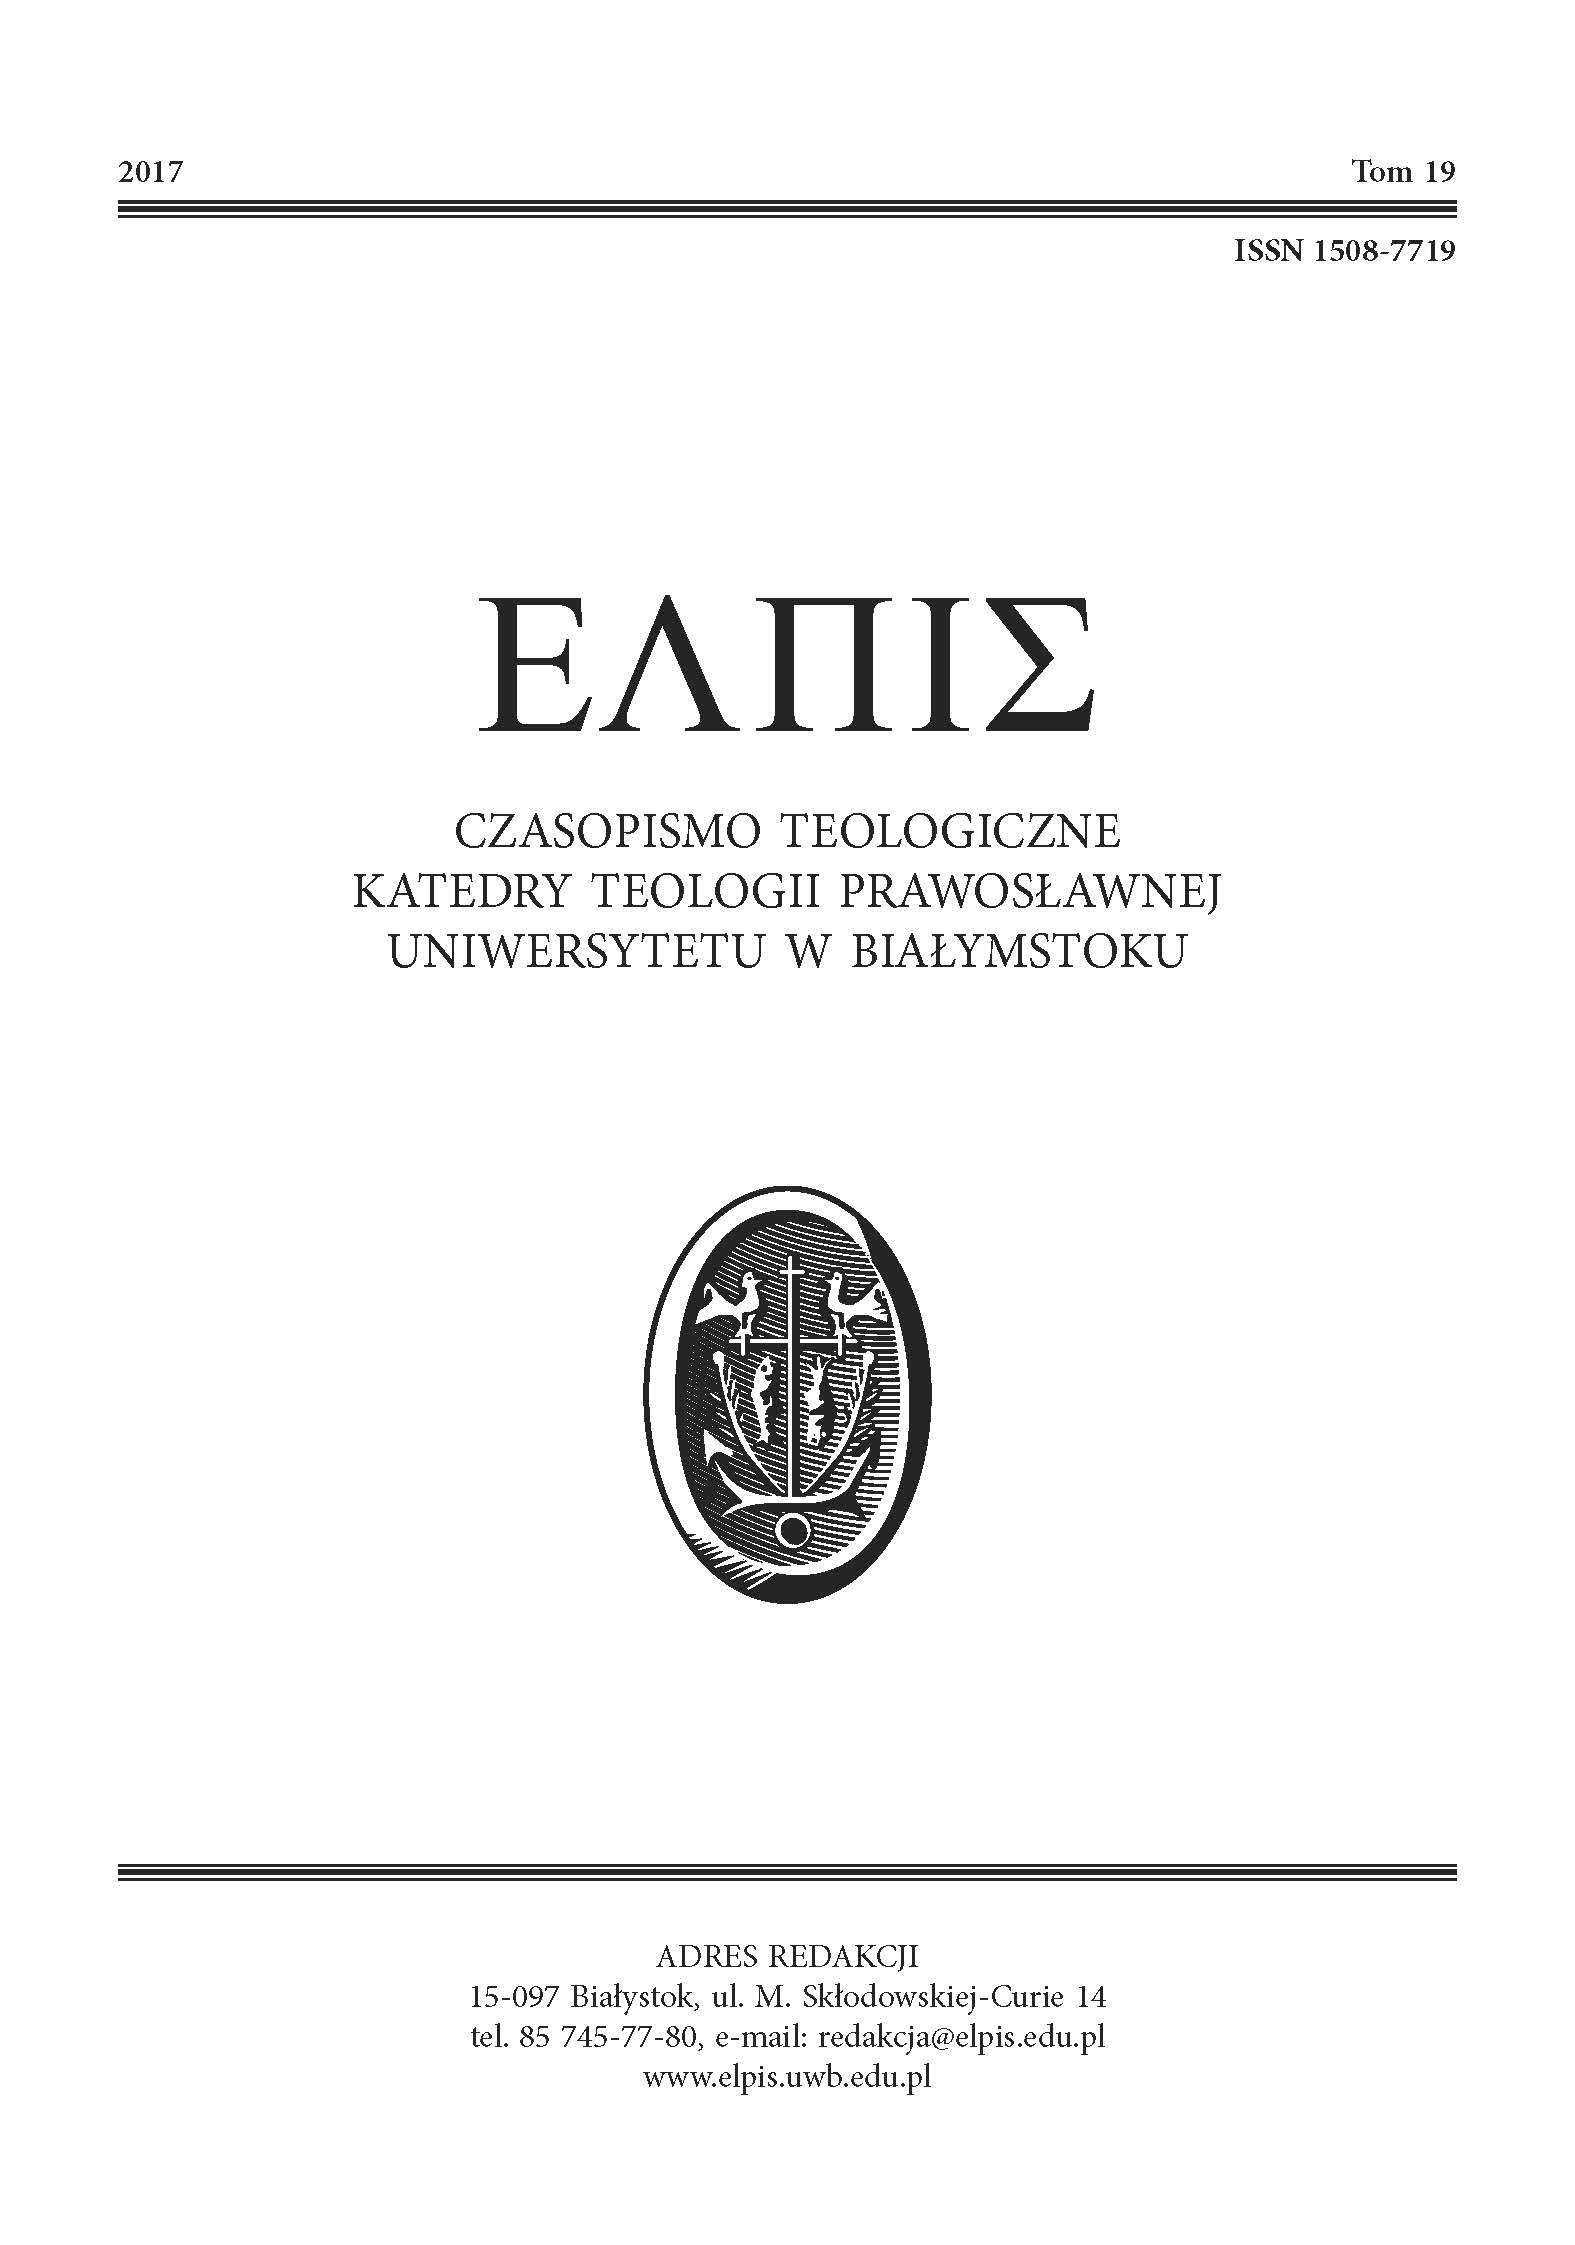 Богословская оценка экономики или Экономика глазами православного богослова